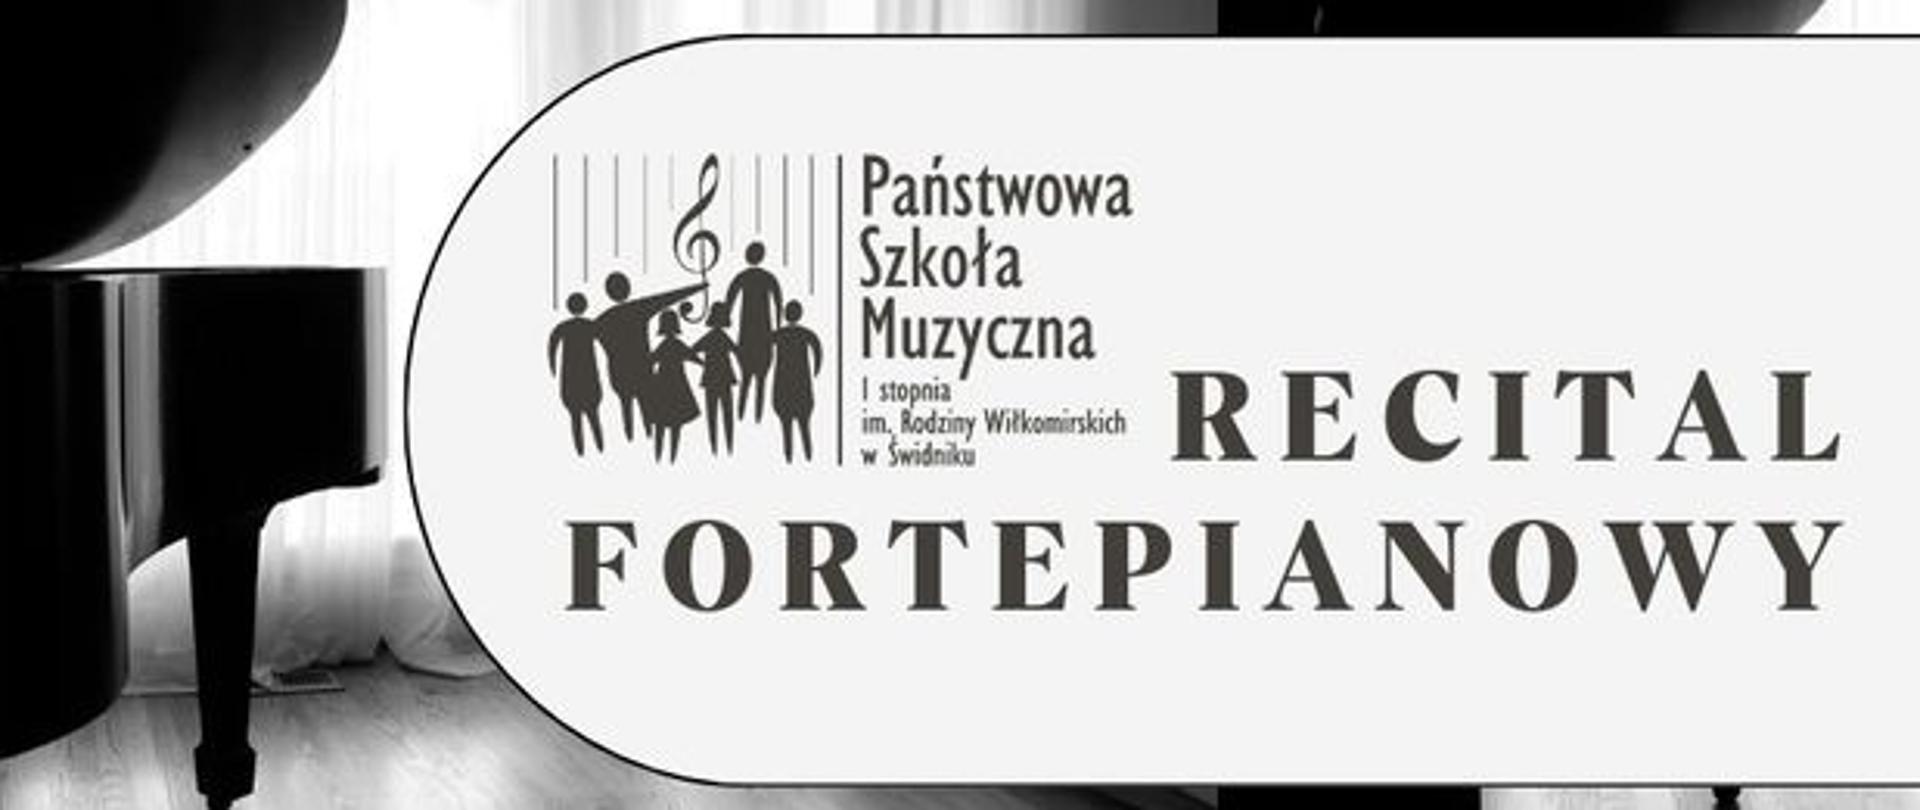 Po lewej stronie fragment fortepianu, centralnie logo szkoły i tekst: Recital fortepianowy. 